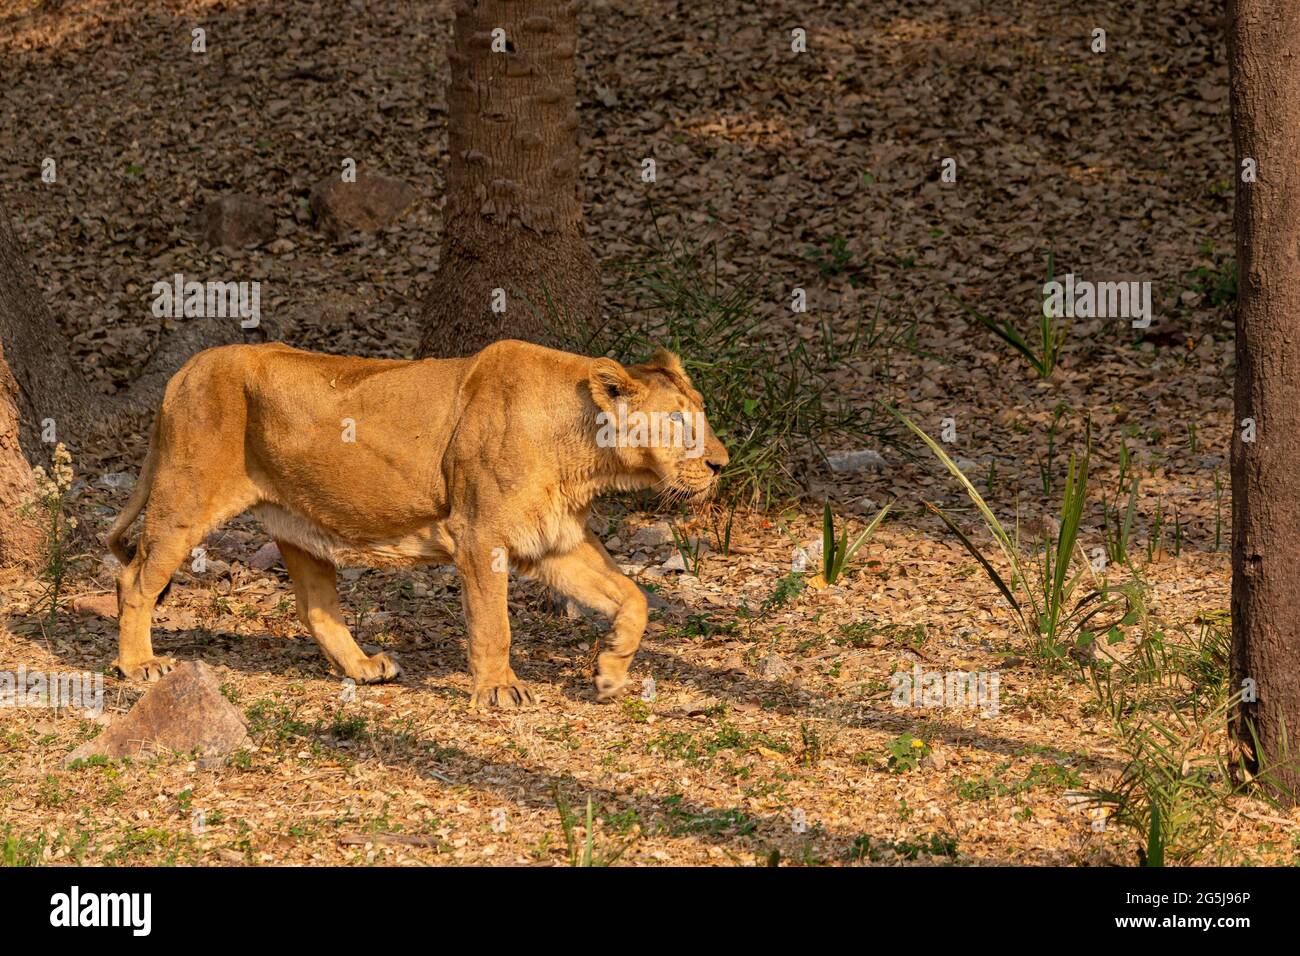 León en el Zoo , fotografía de vida silvestre Foto de stock